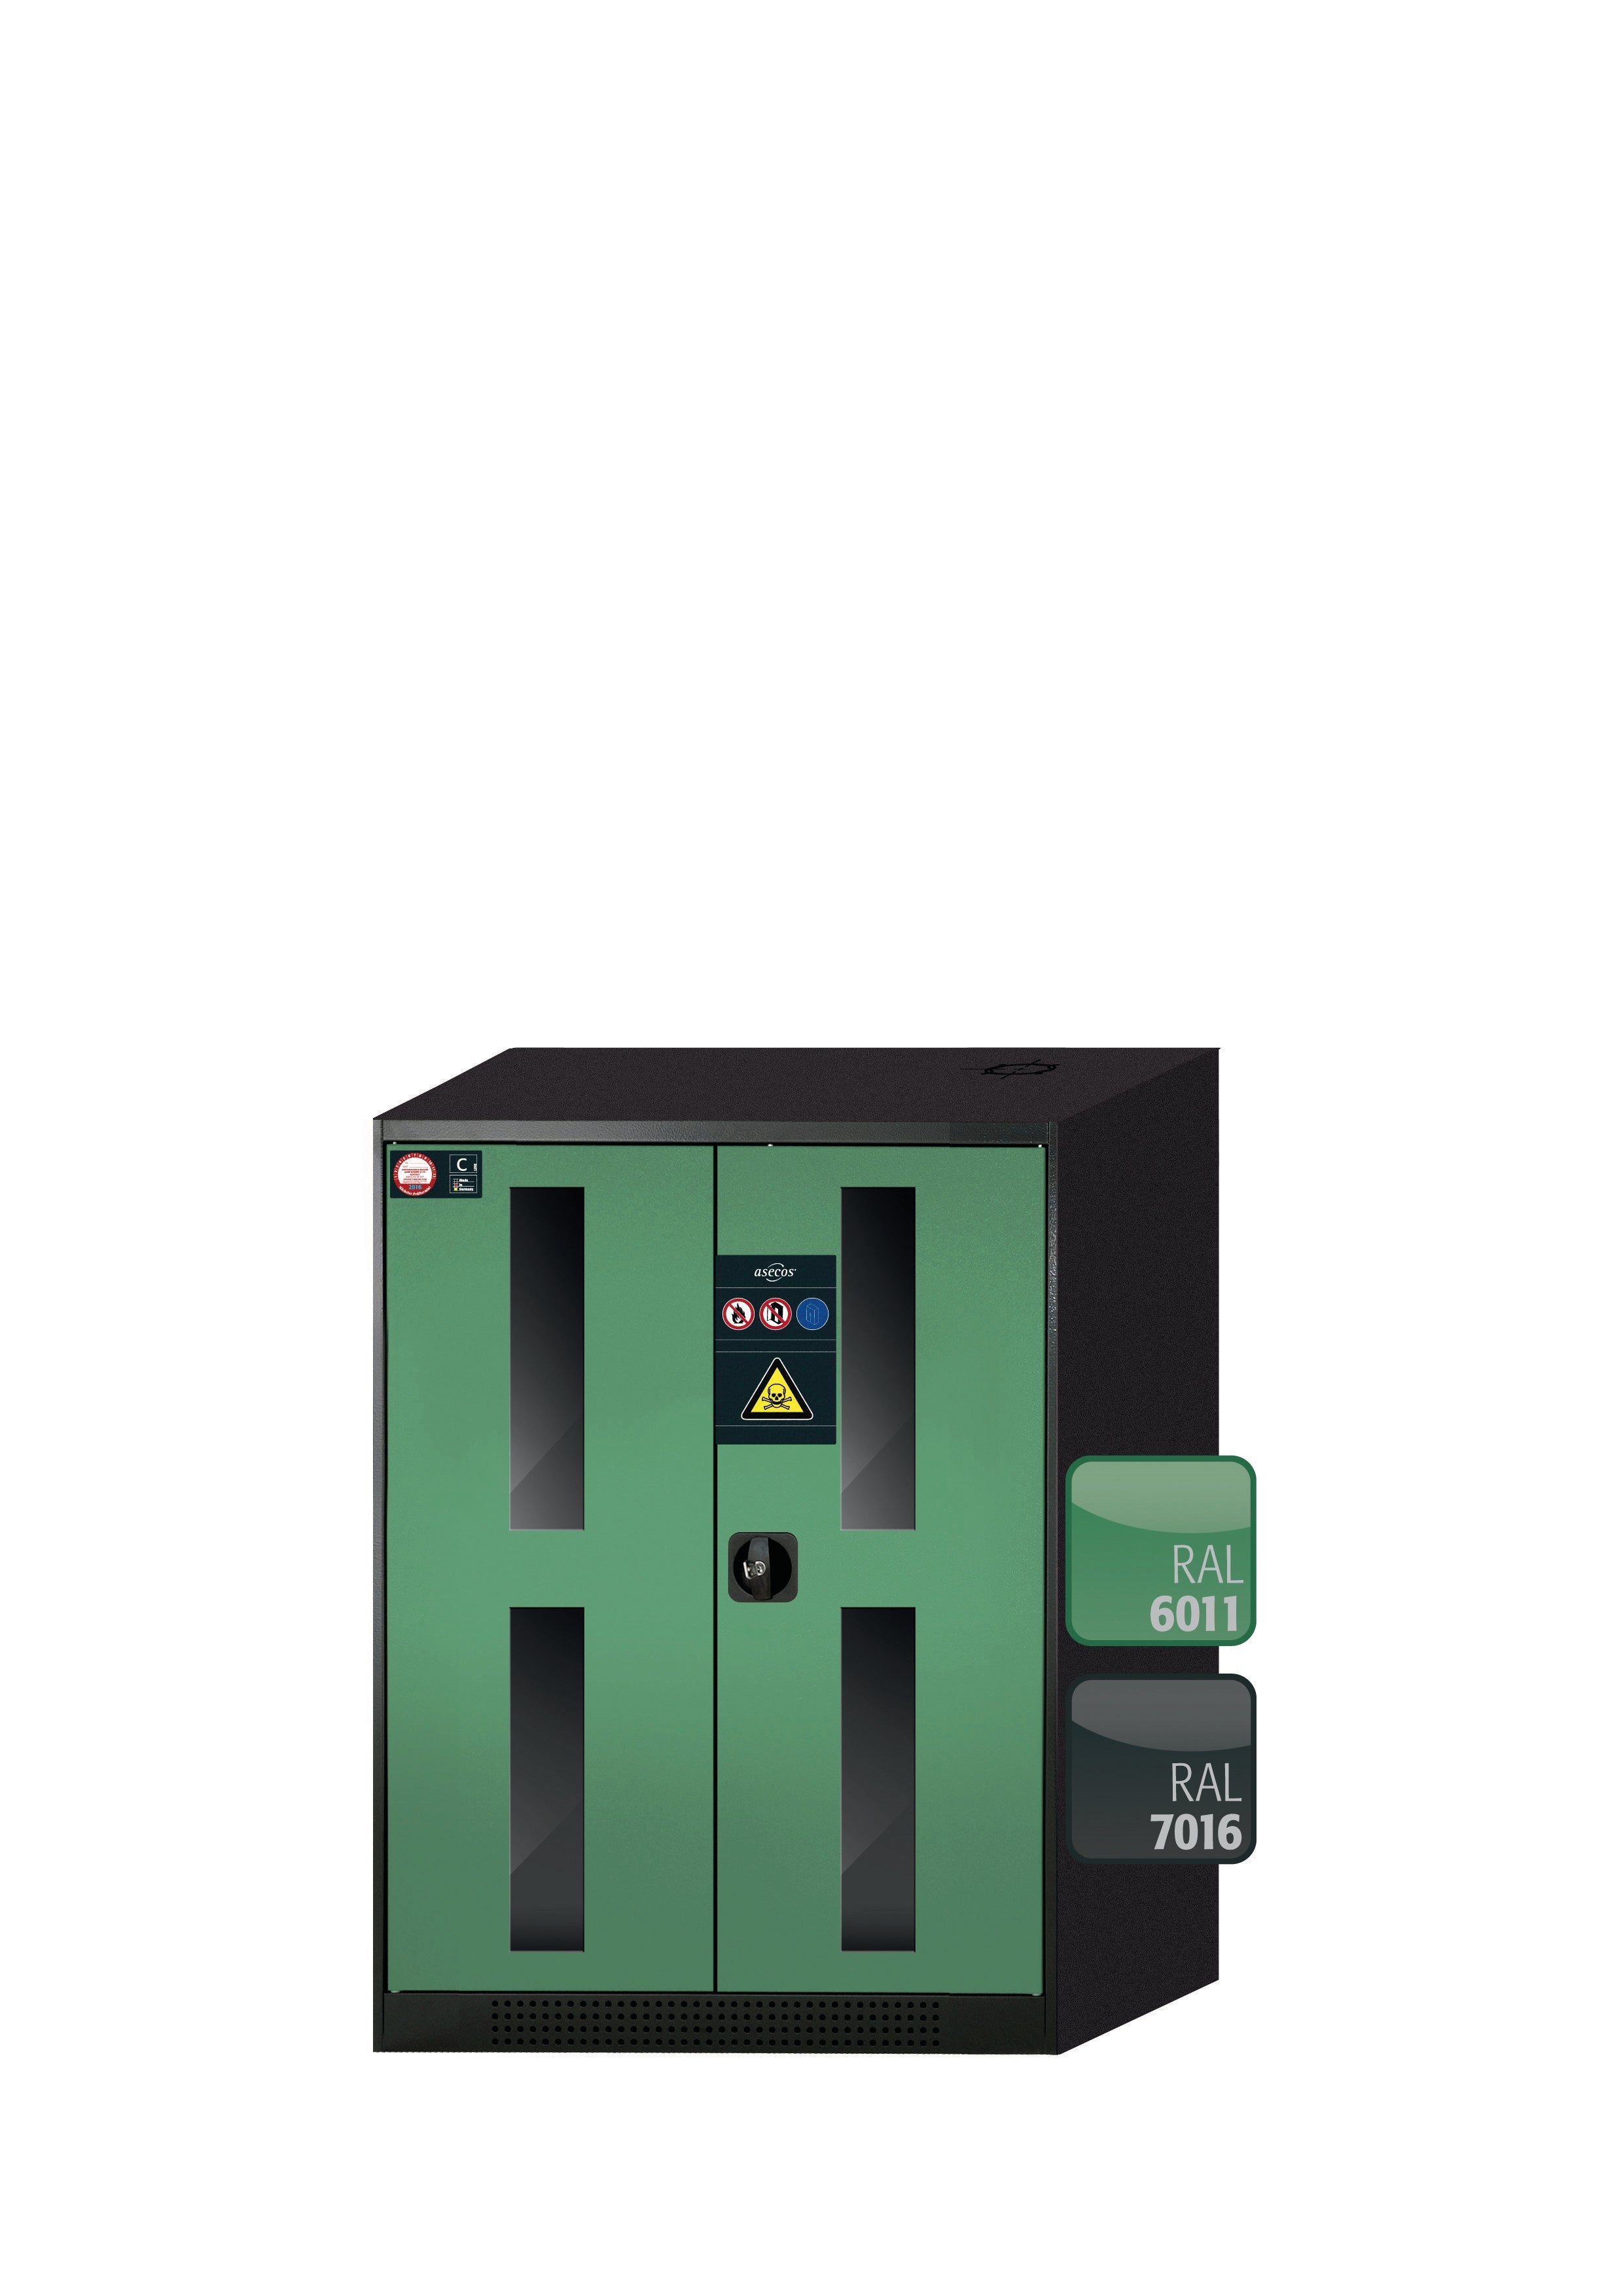 Armoire chimique CS-CLASSIC-G modèle CS.110.081.WDFW en vert réséda RAL 6011 avec 2x étagères standard (tôle d'acier)